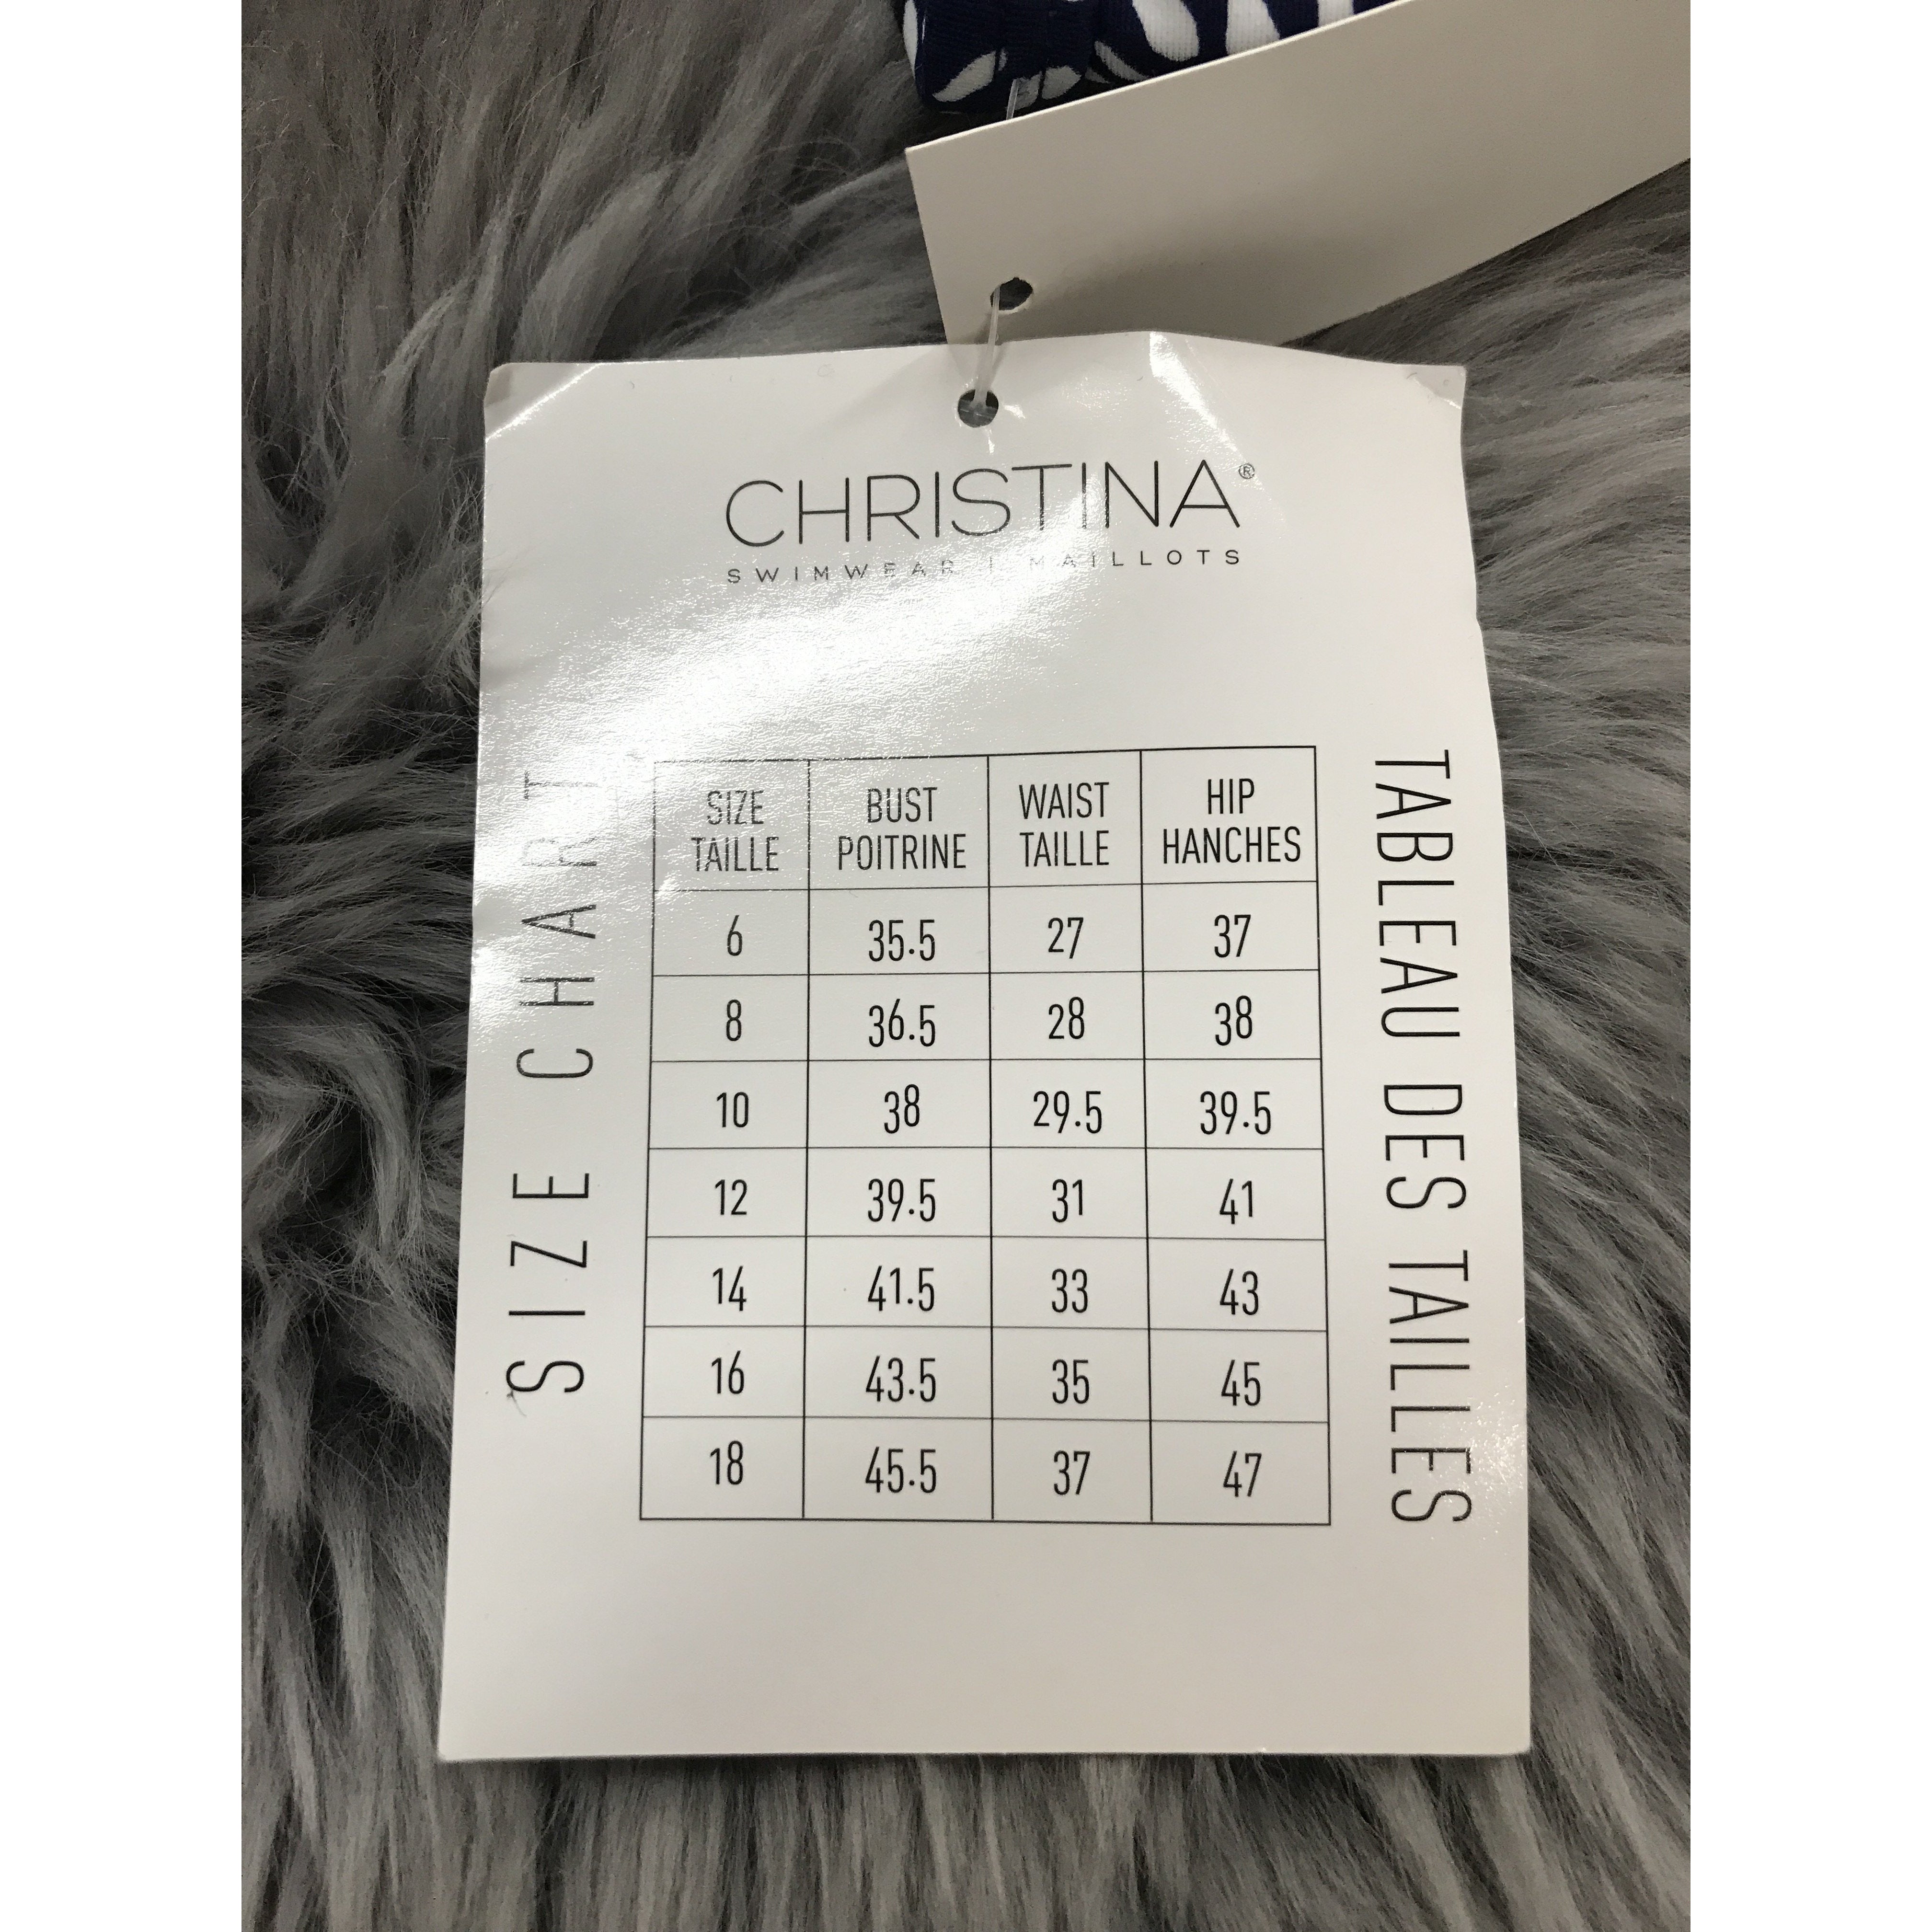 Christina Women's Bathing Suit Top: Multi-Colour Design / Size 12